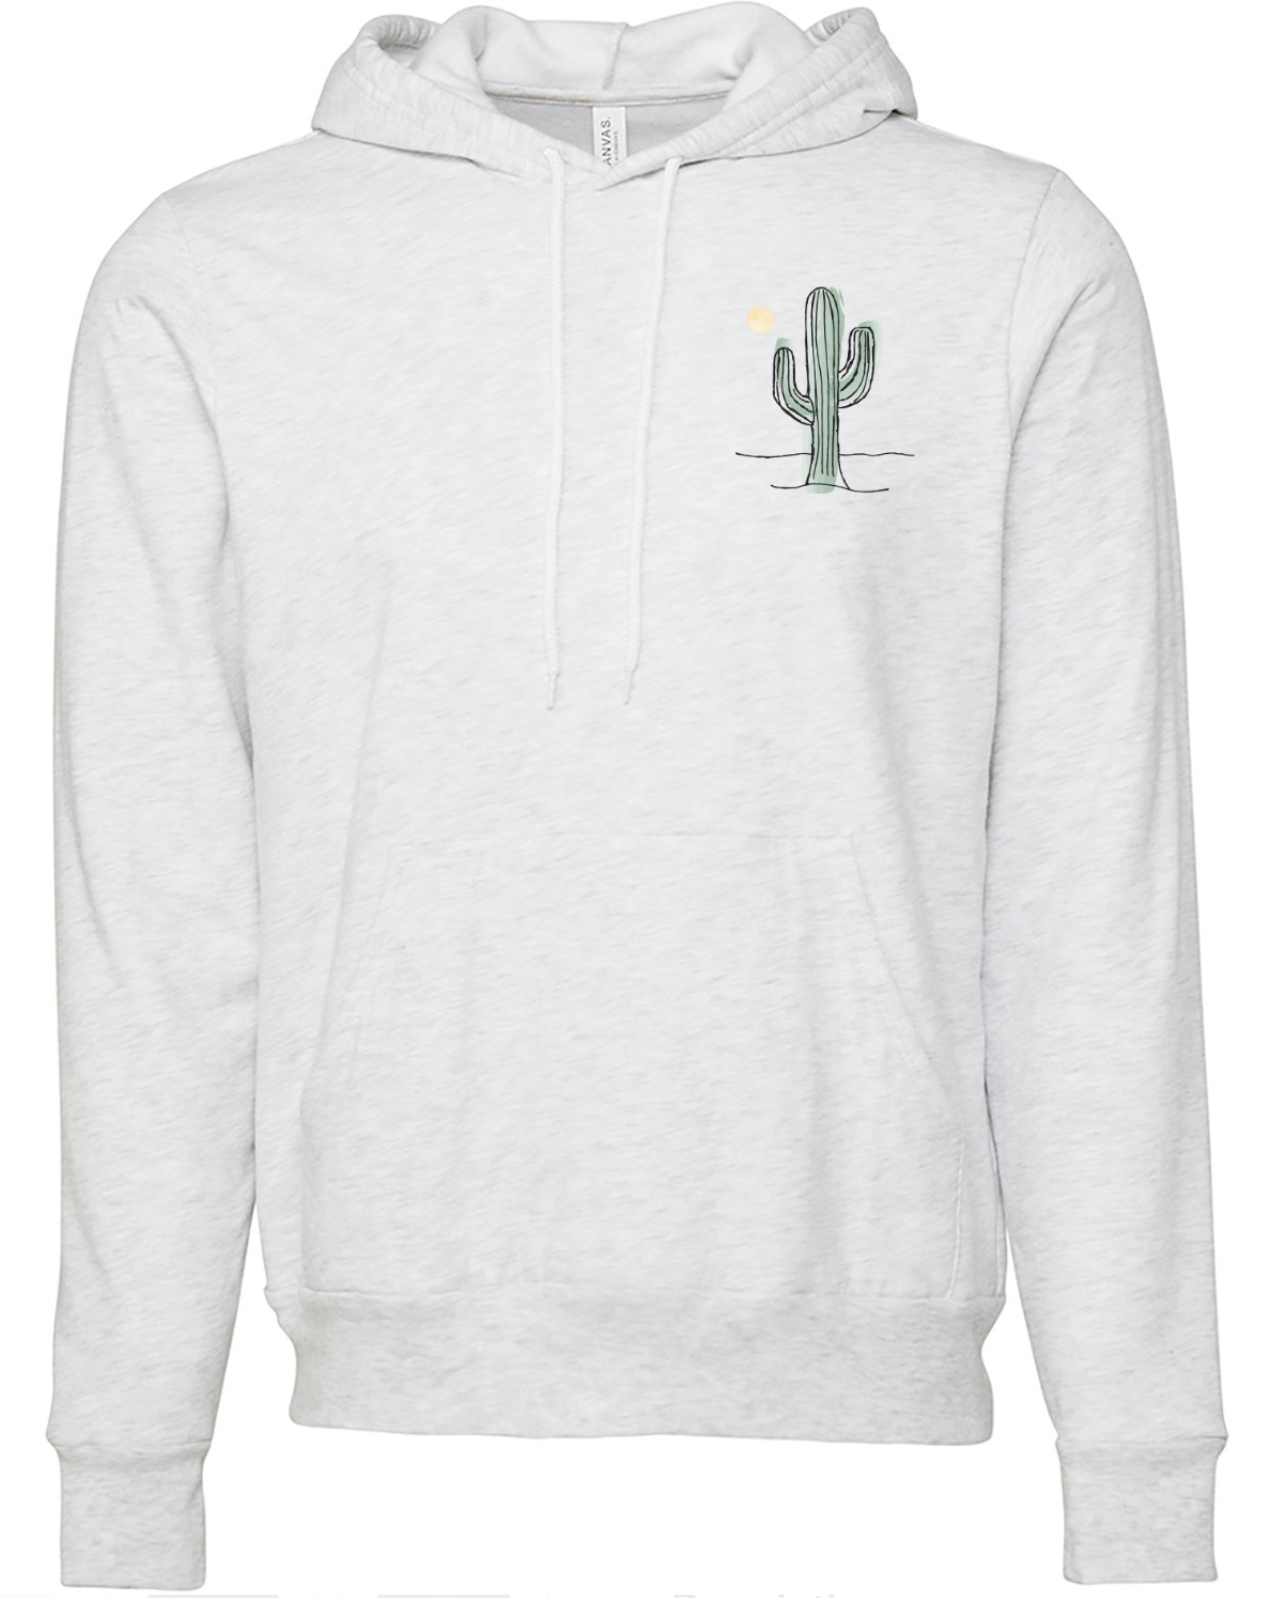 The Iron Cactus Unisex Ivory Sweatshirt